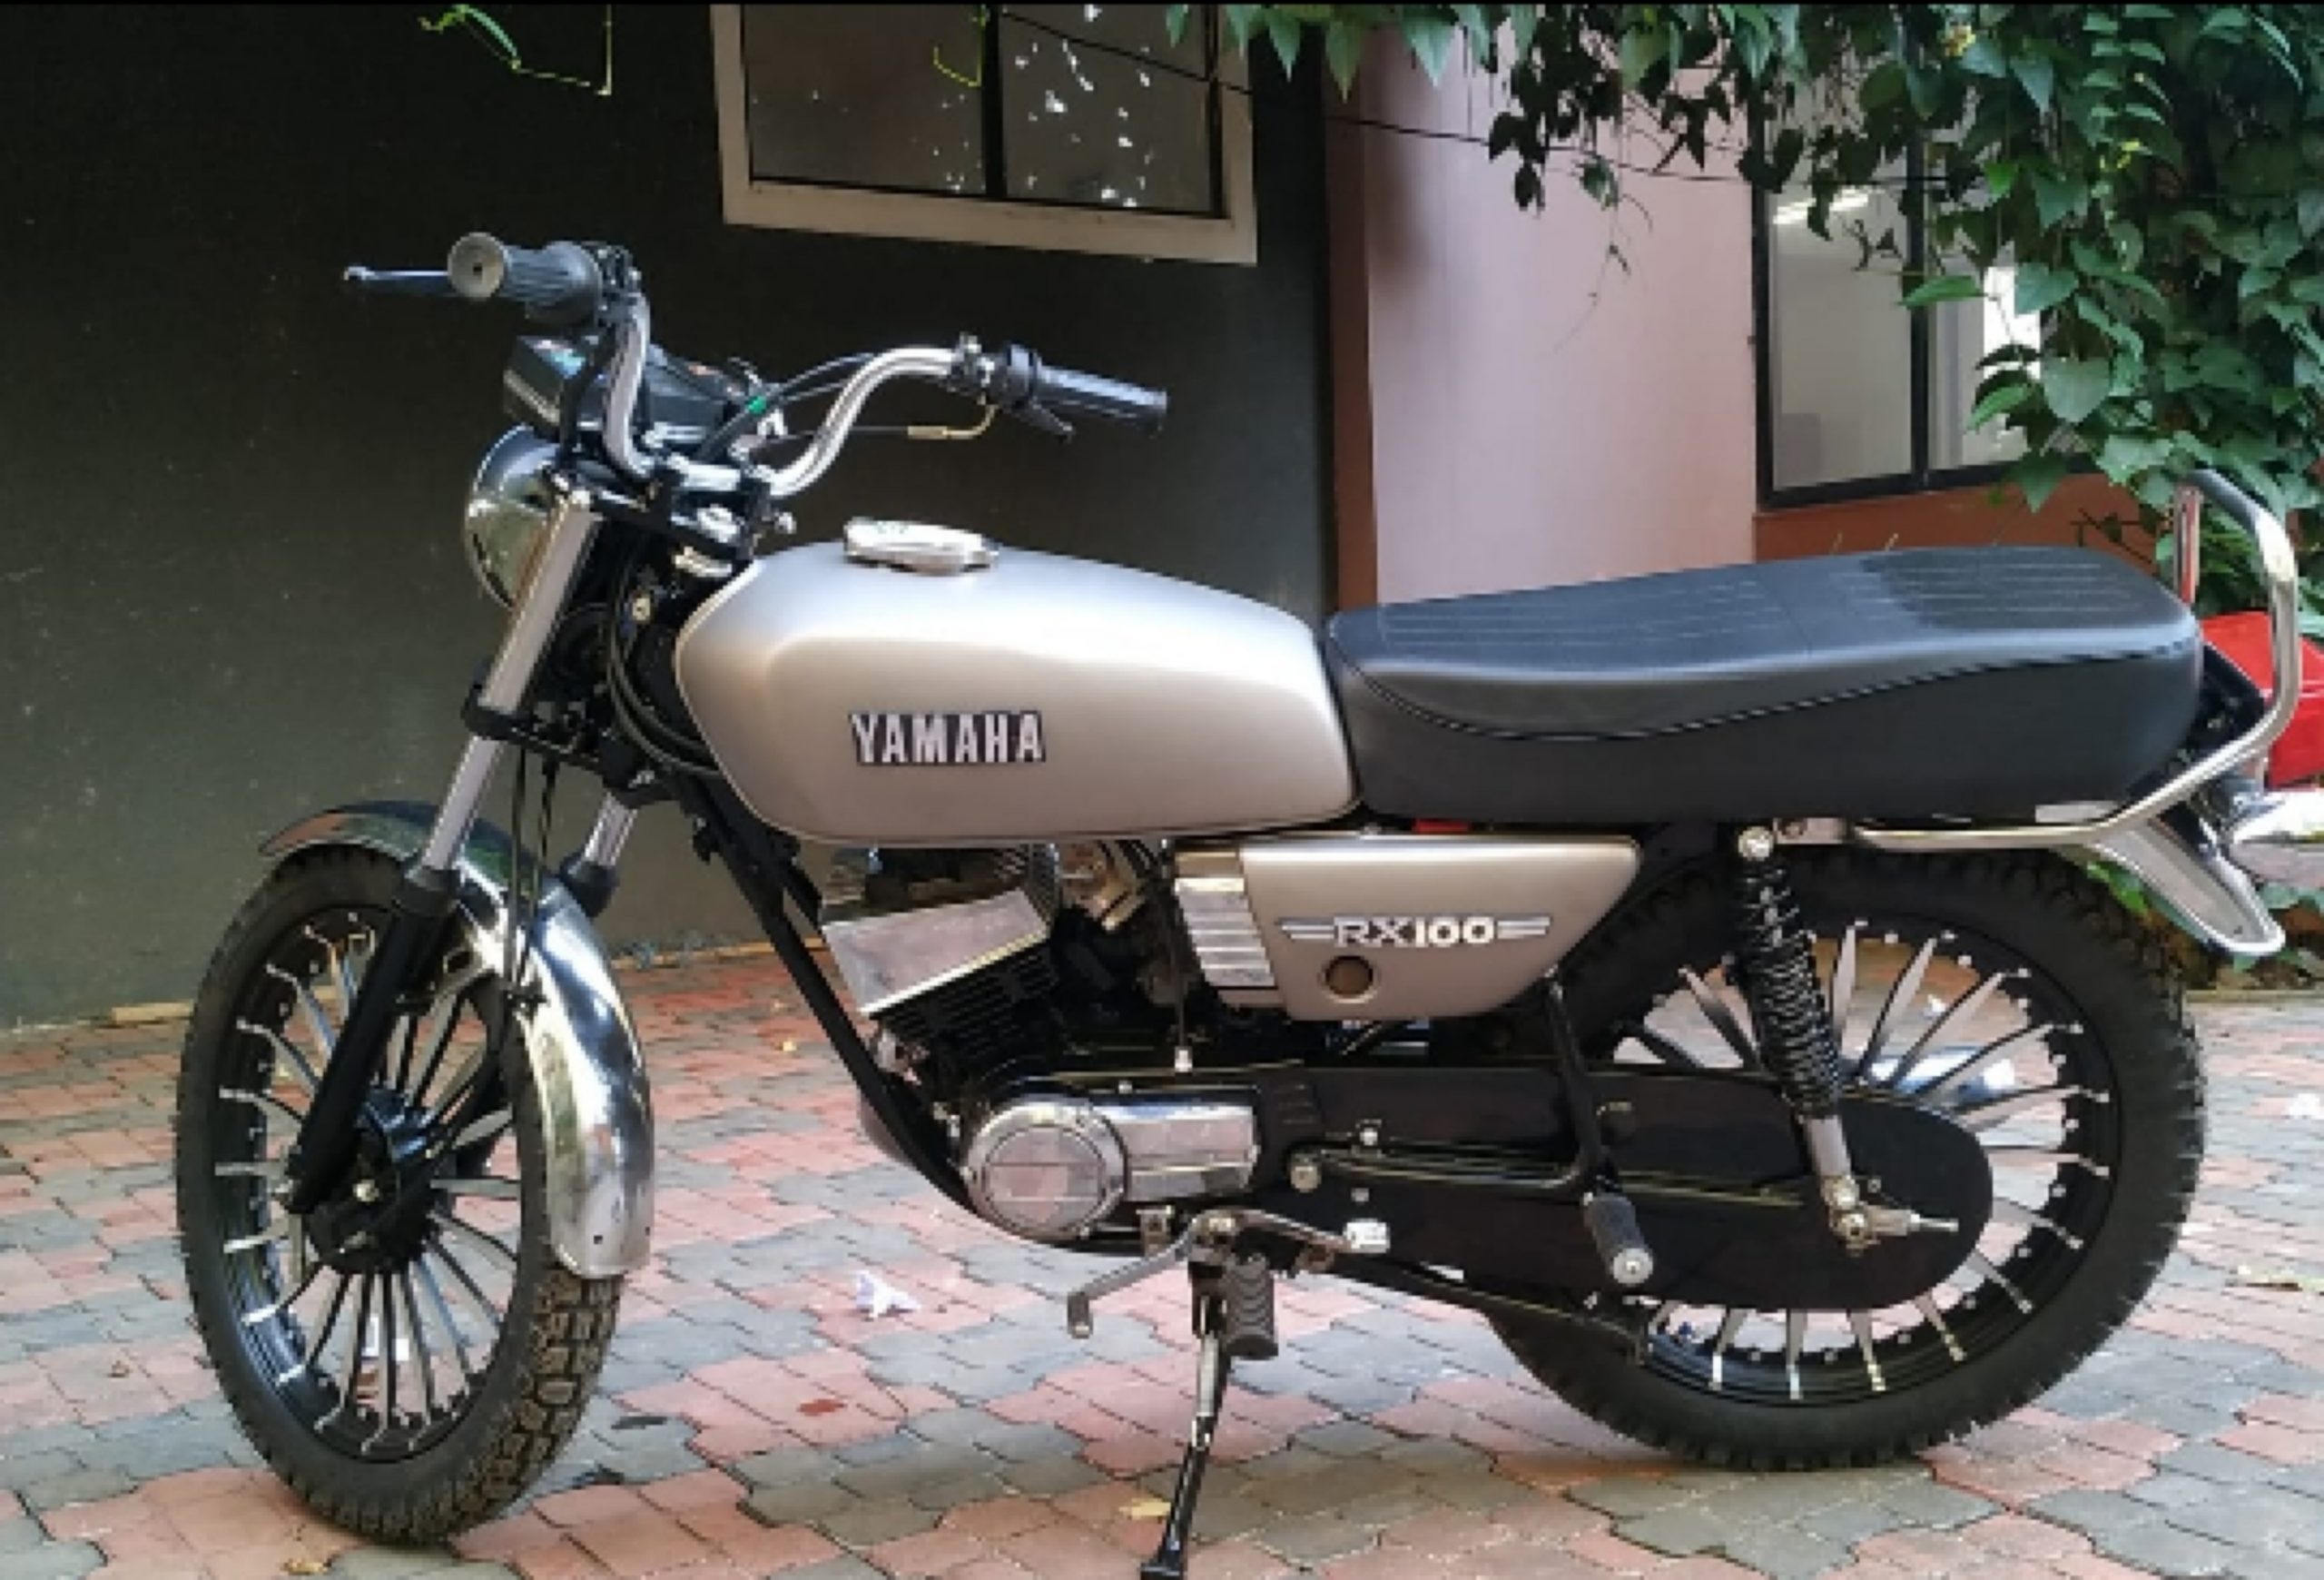 Yamaha RX100 bike